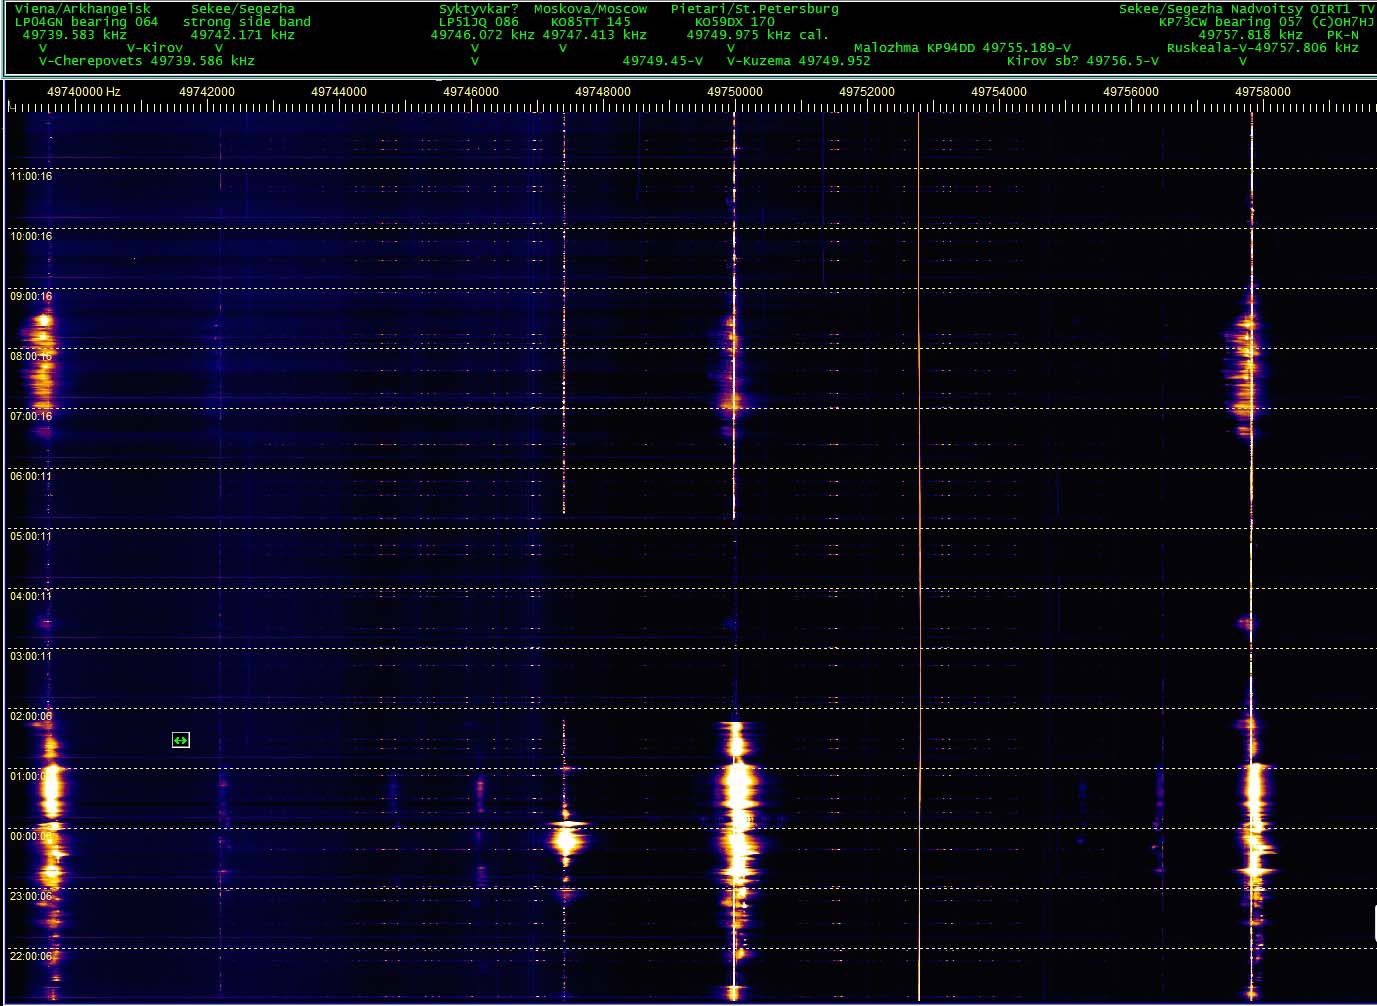 2018-04-10-1157 FT - PK-N RTL SDRV3 SL Y6H 360 - R1 TV wide spectrum - Aurora bursts (c) OH7HJ.jpg